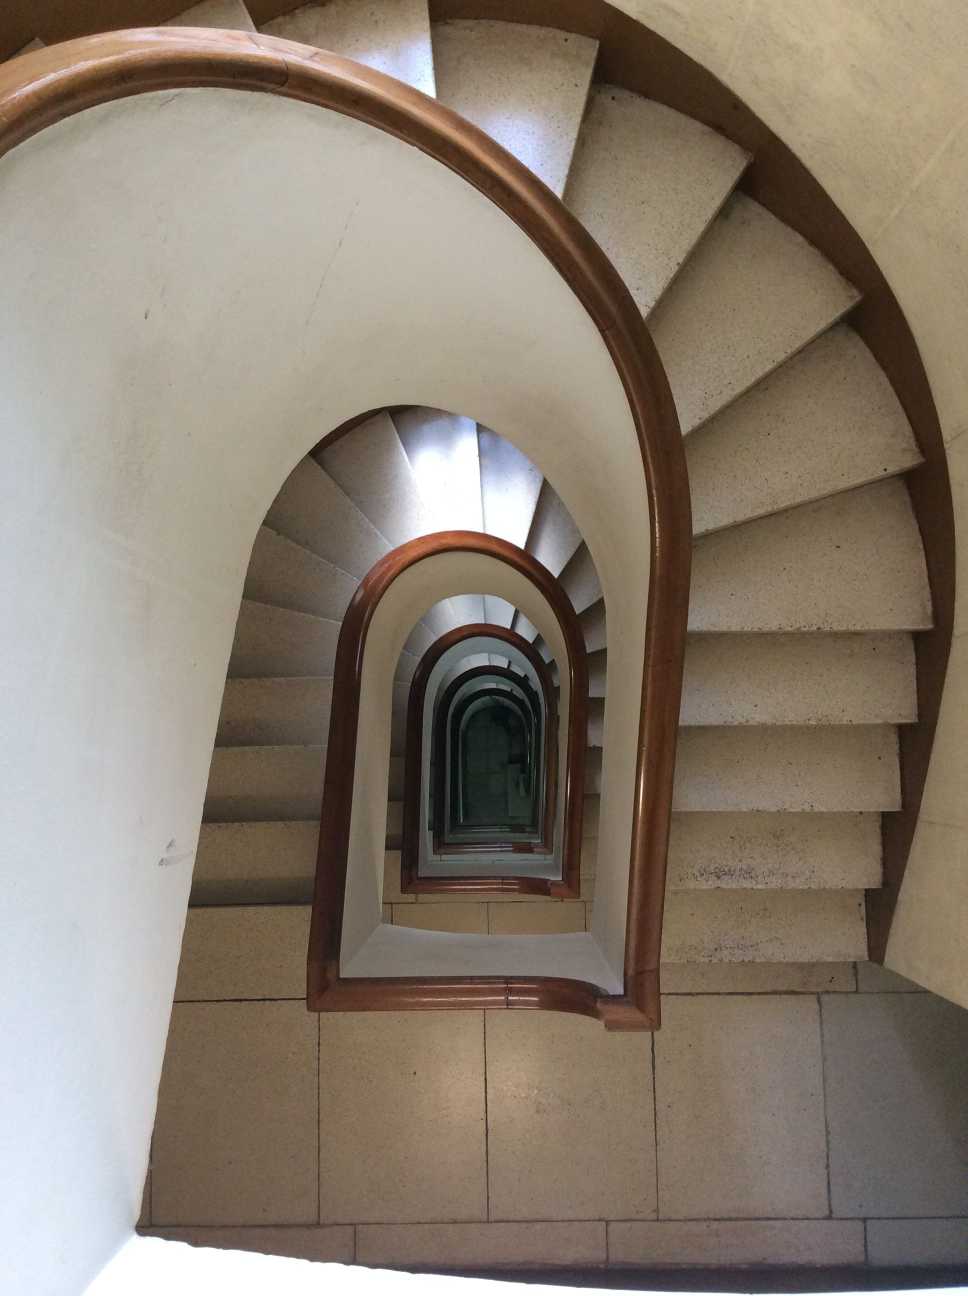 escaleras antigua...: ¿Cómo se utiliza?